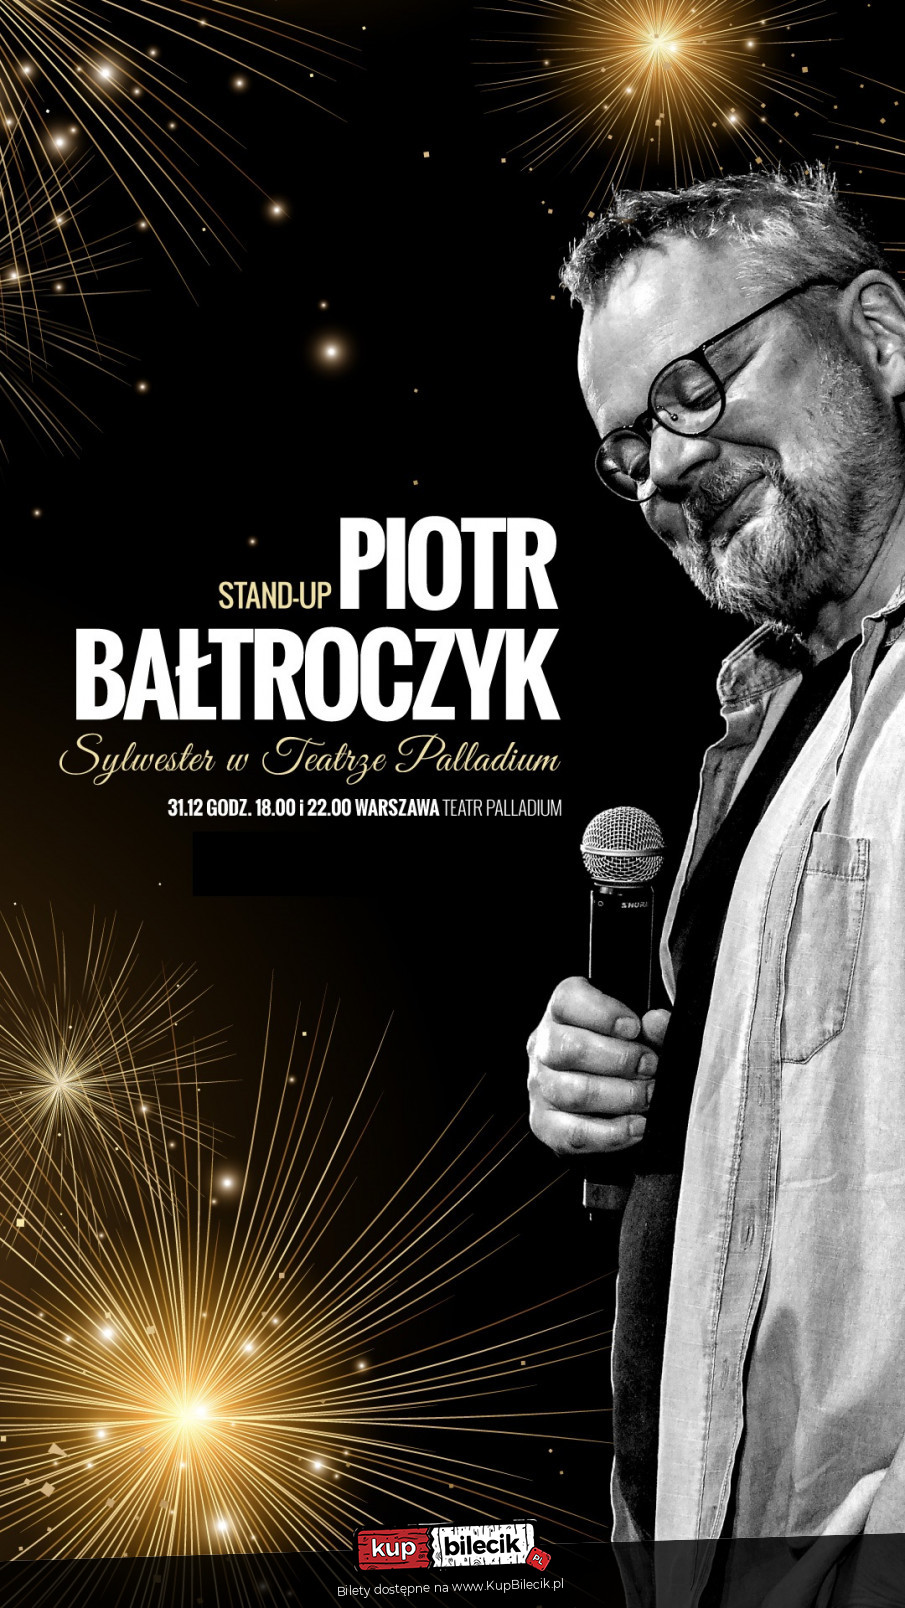 Plakat Piotr Bałtroczyk 104290